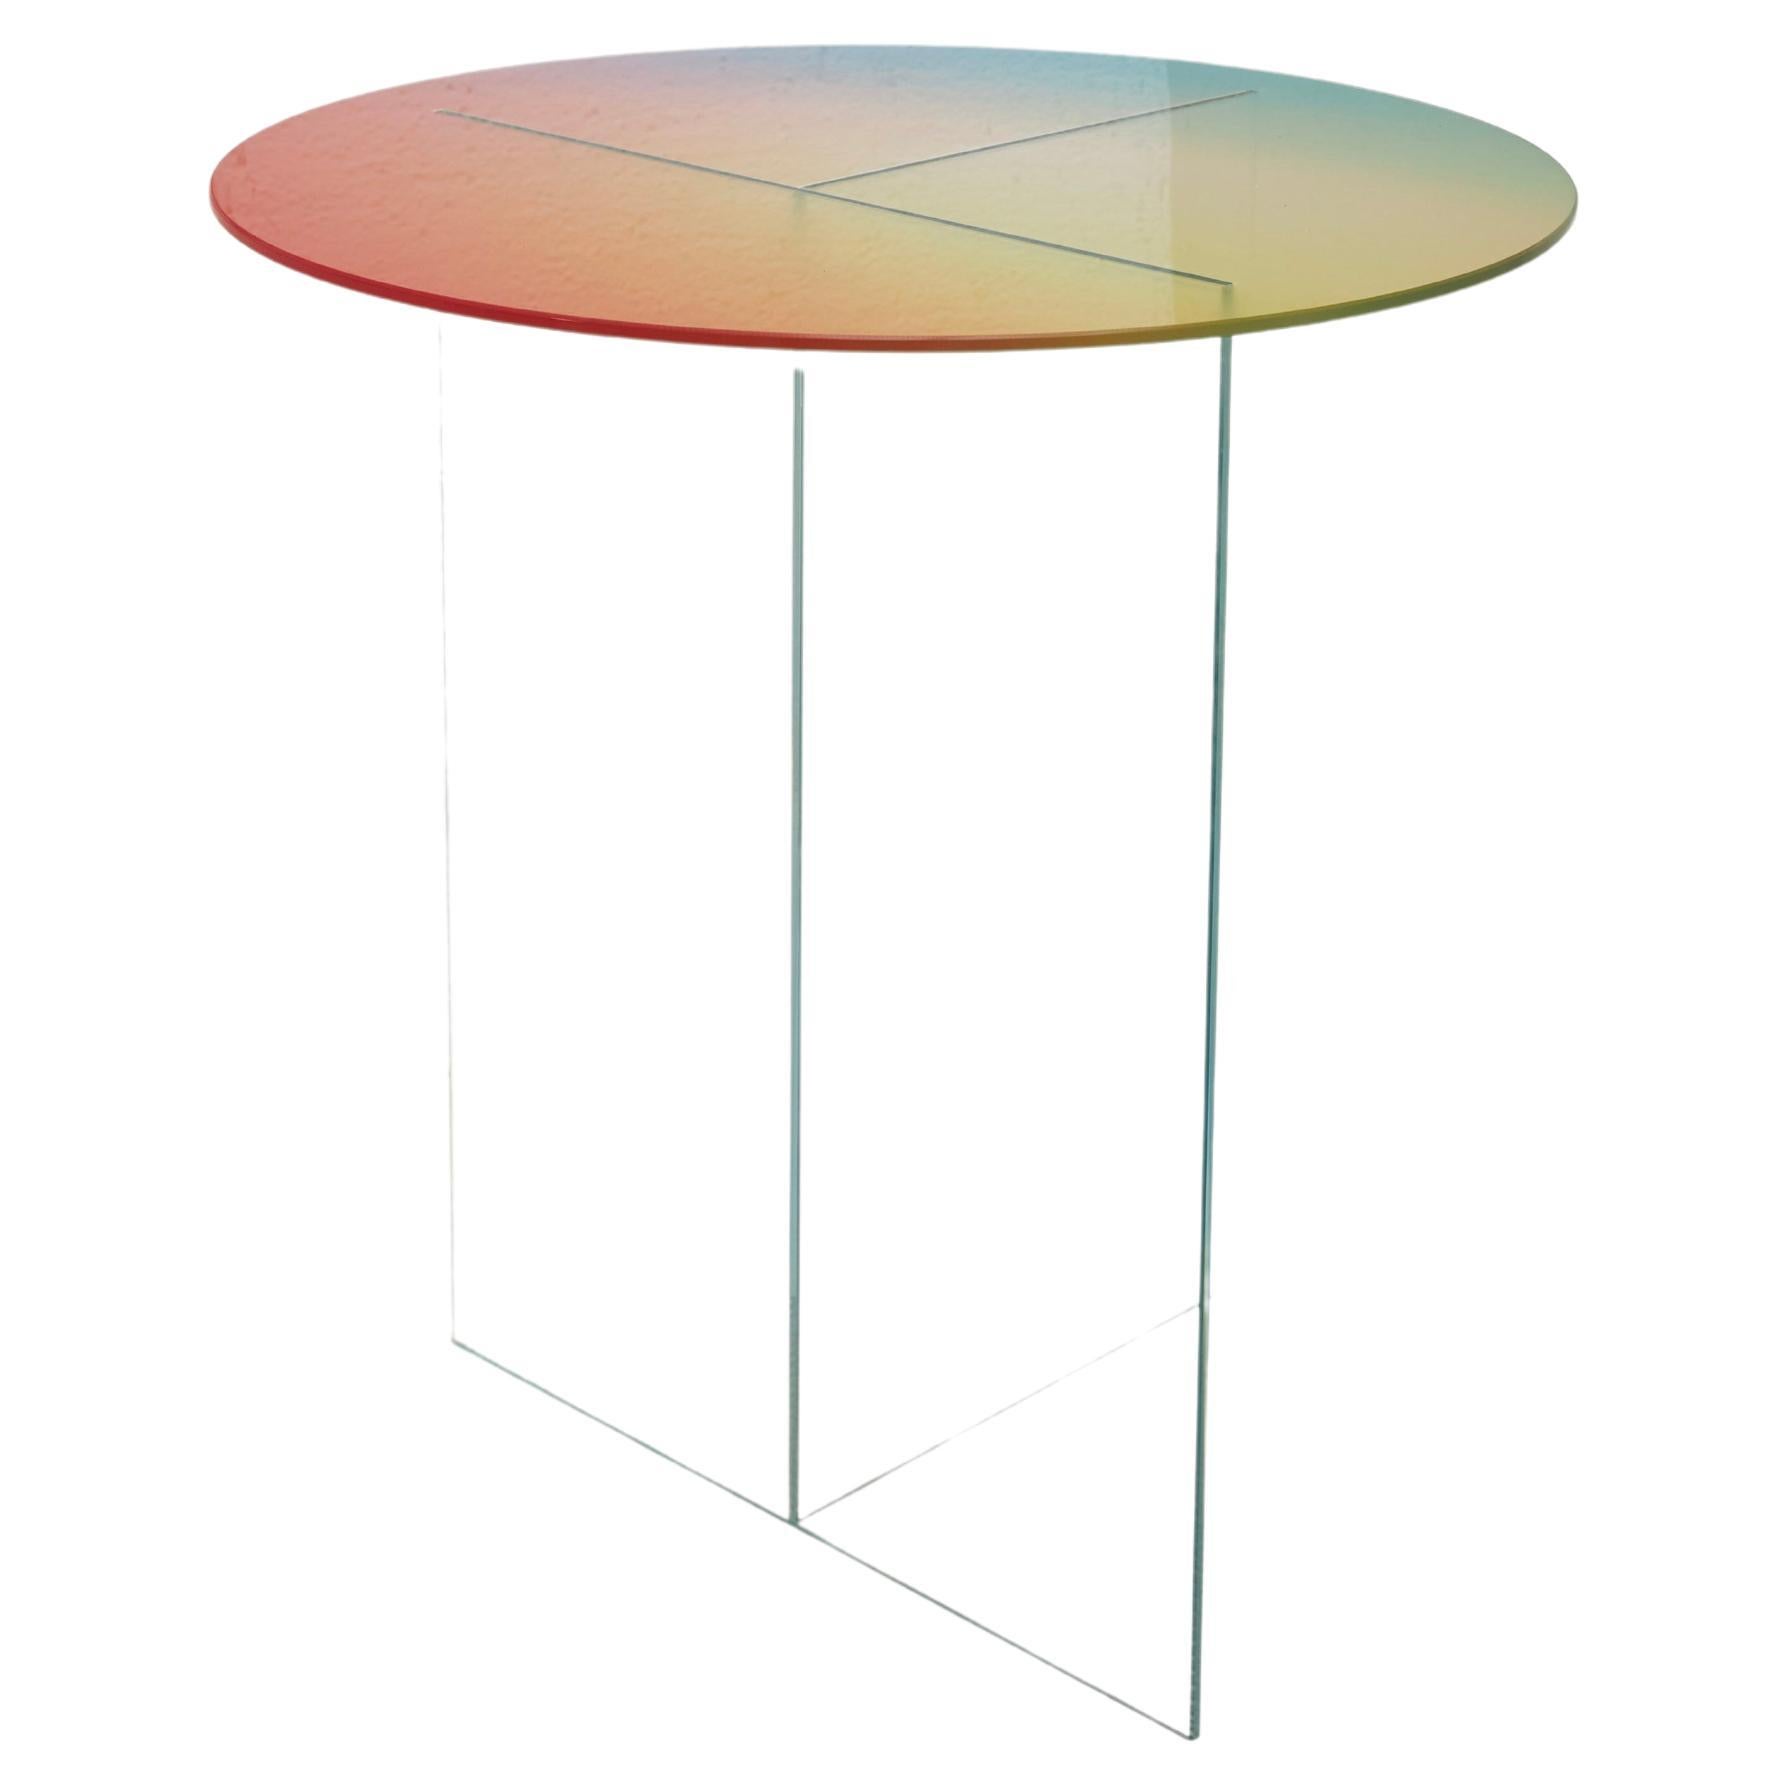 L'inspiration derrière la table basse Cosmos provient de l'idée que différentes couleurs et idées peuvent coexister en harmonie, reflétant la texture vibrante de notre environnement multiculturel. Préparé par des artisans talentueux, ce produit est